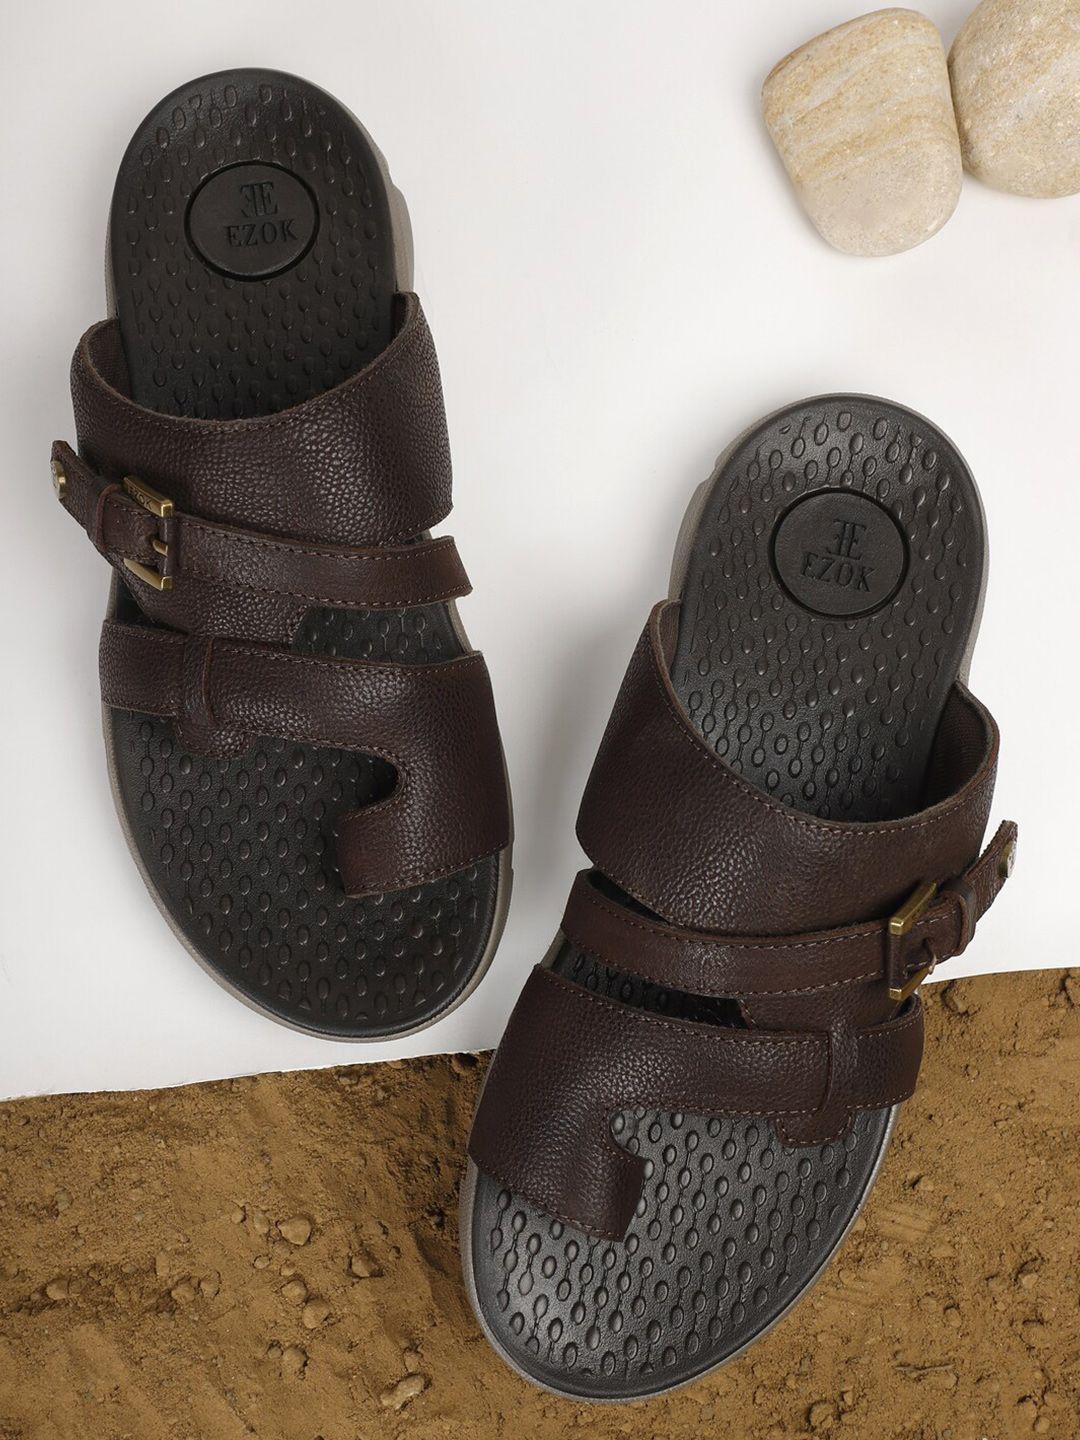 EZOK Men Textured Leather Comfort Sandals